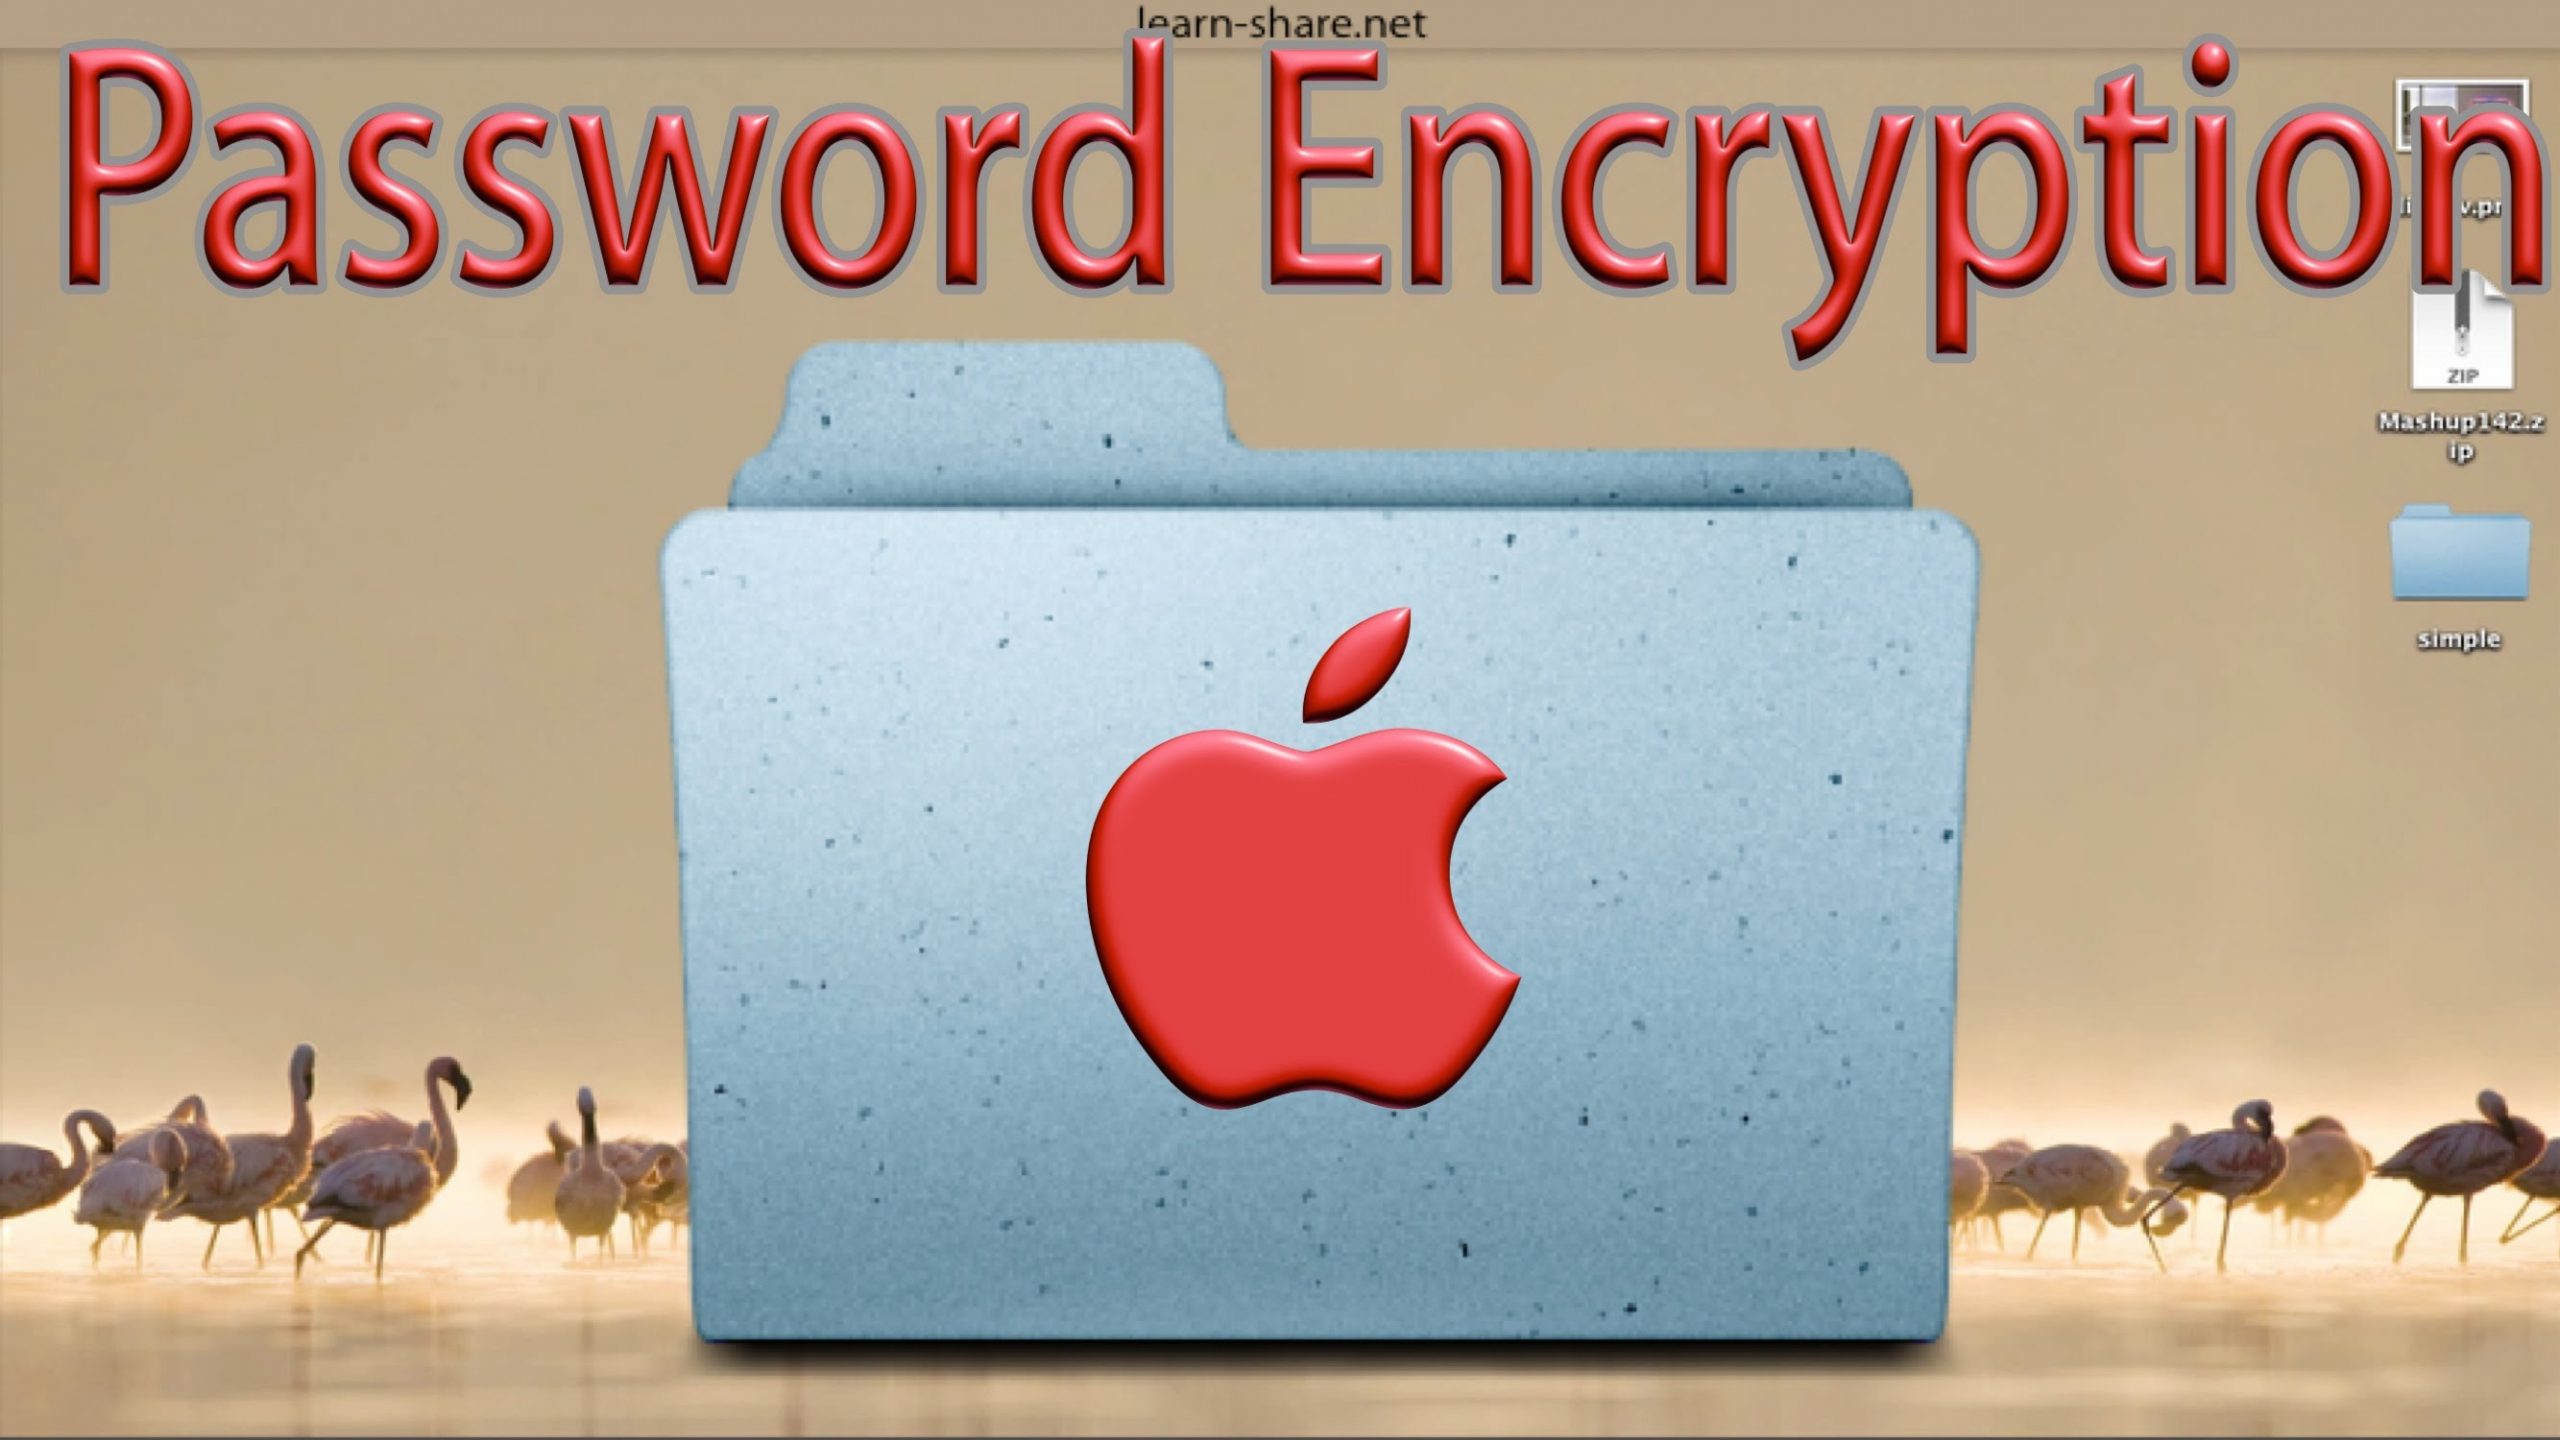 imazing backup encryption password